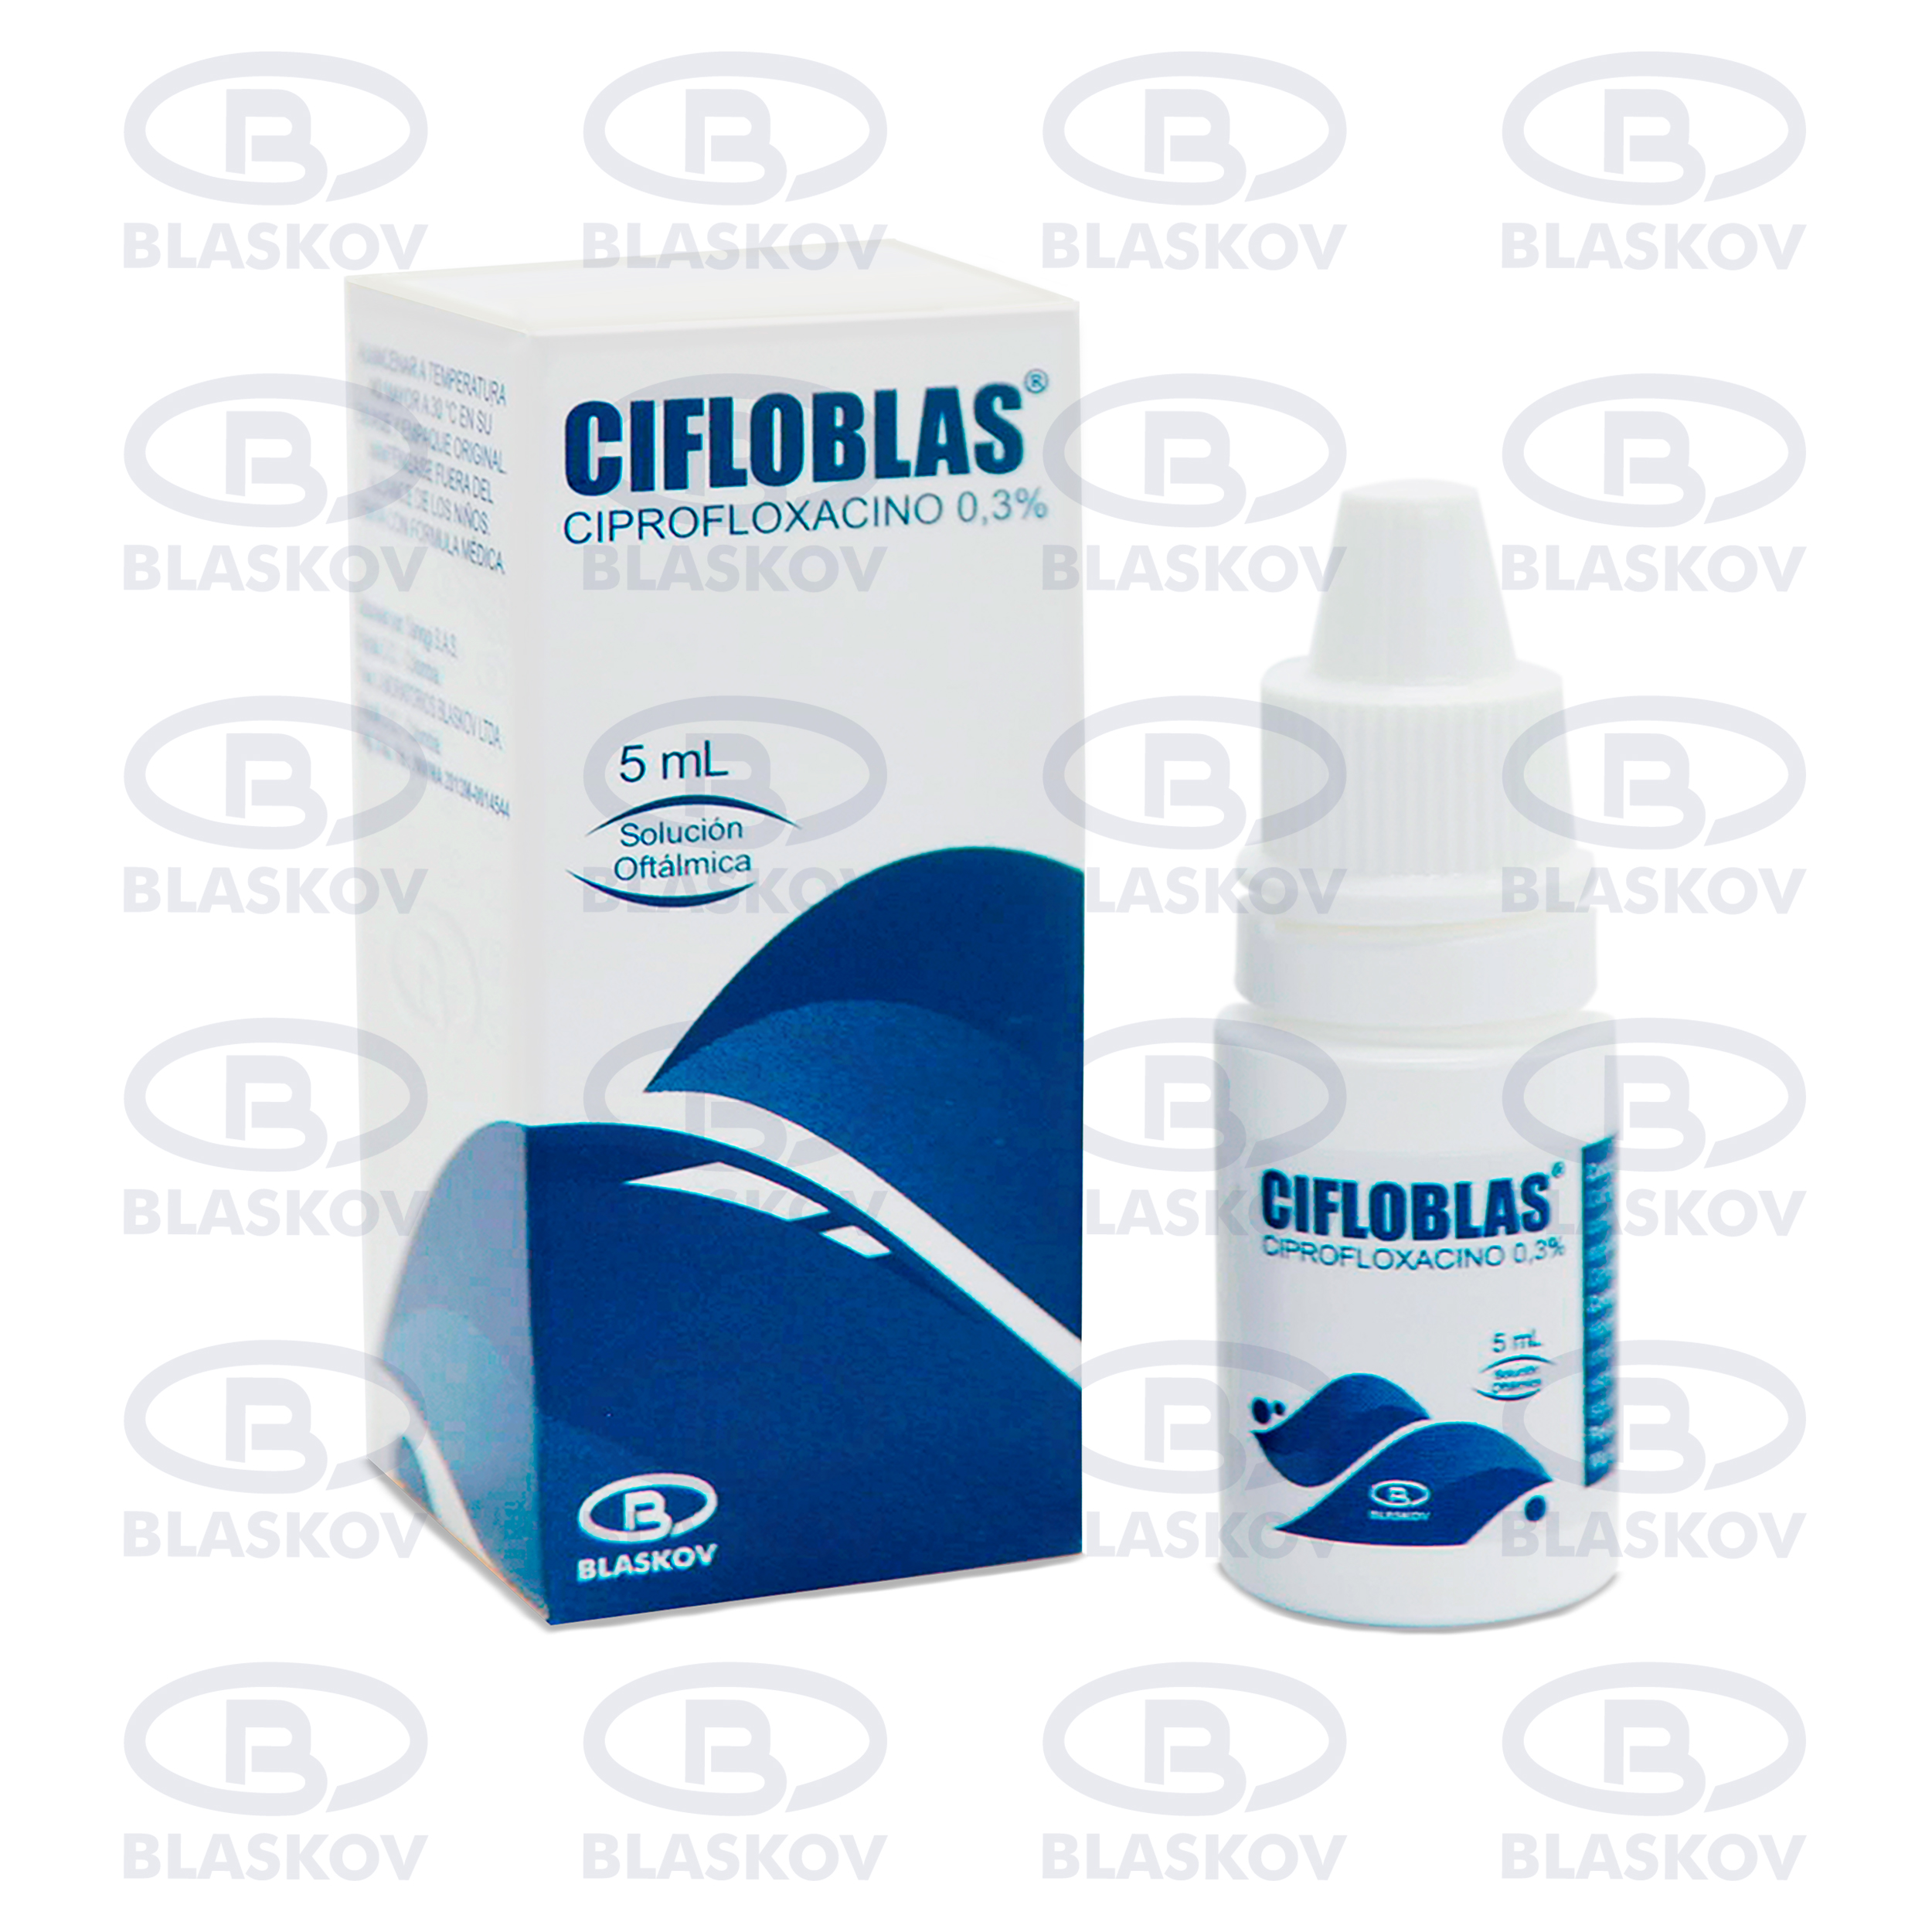 Cifloblas